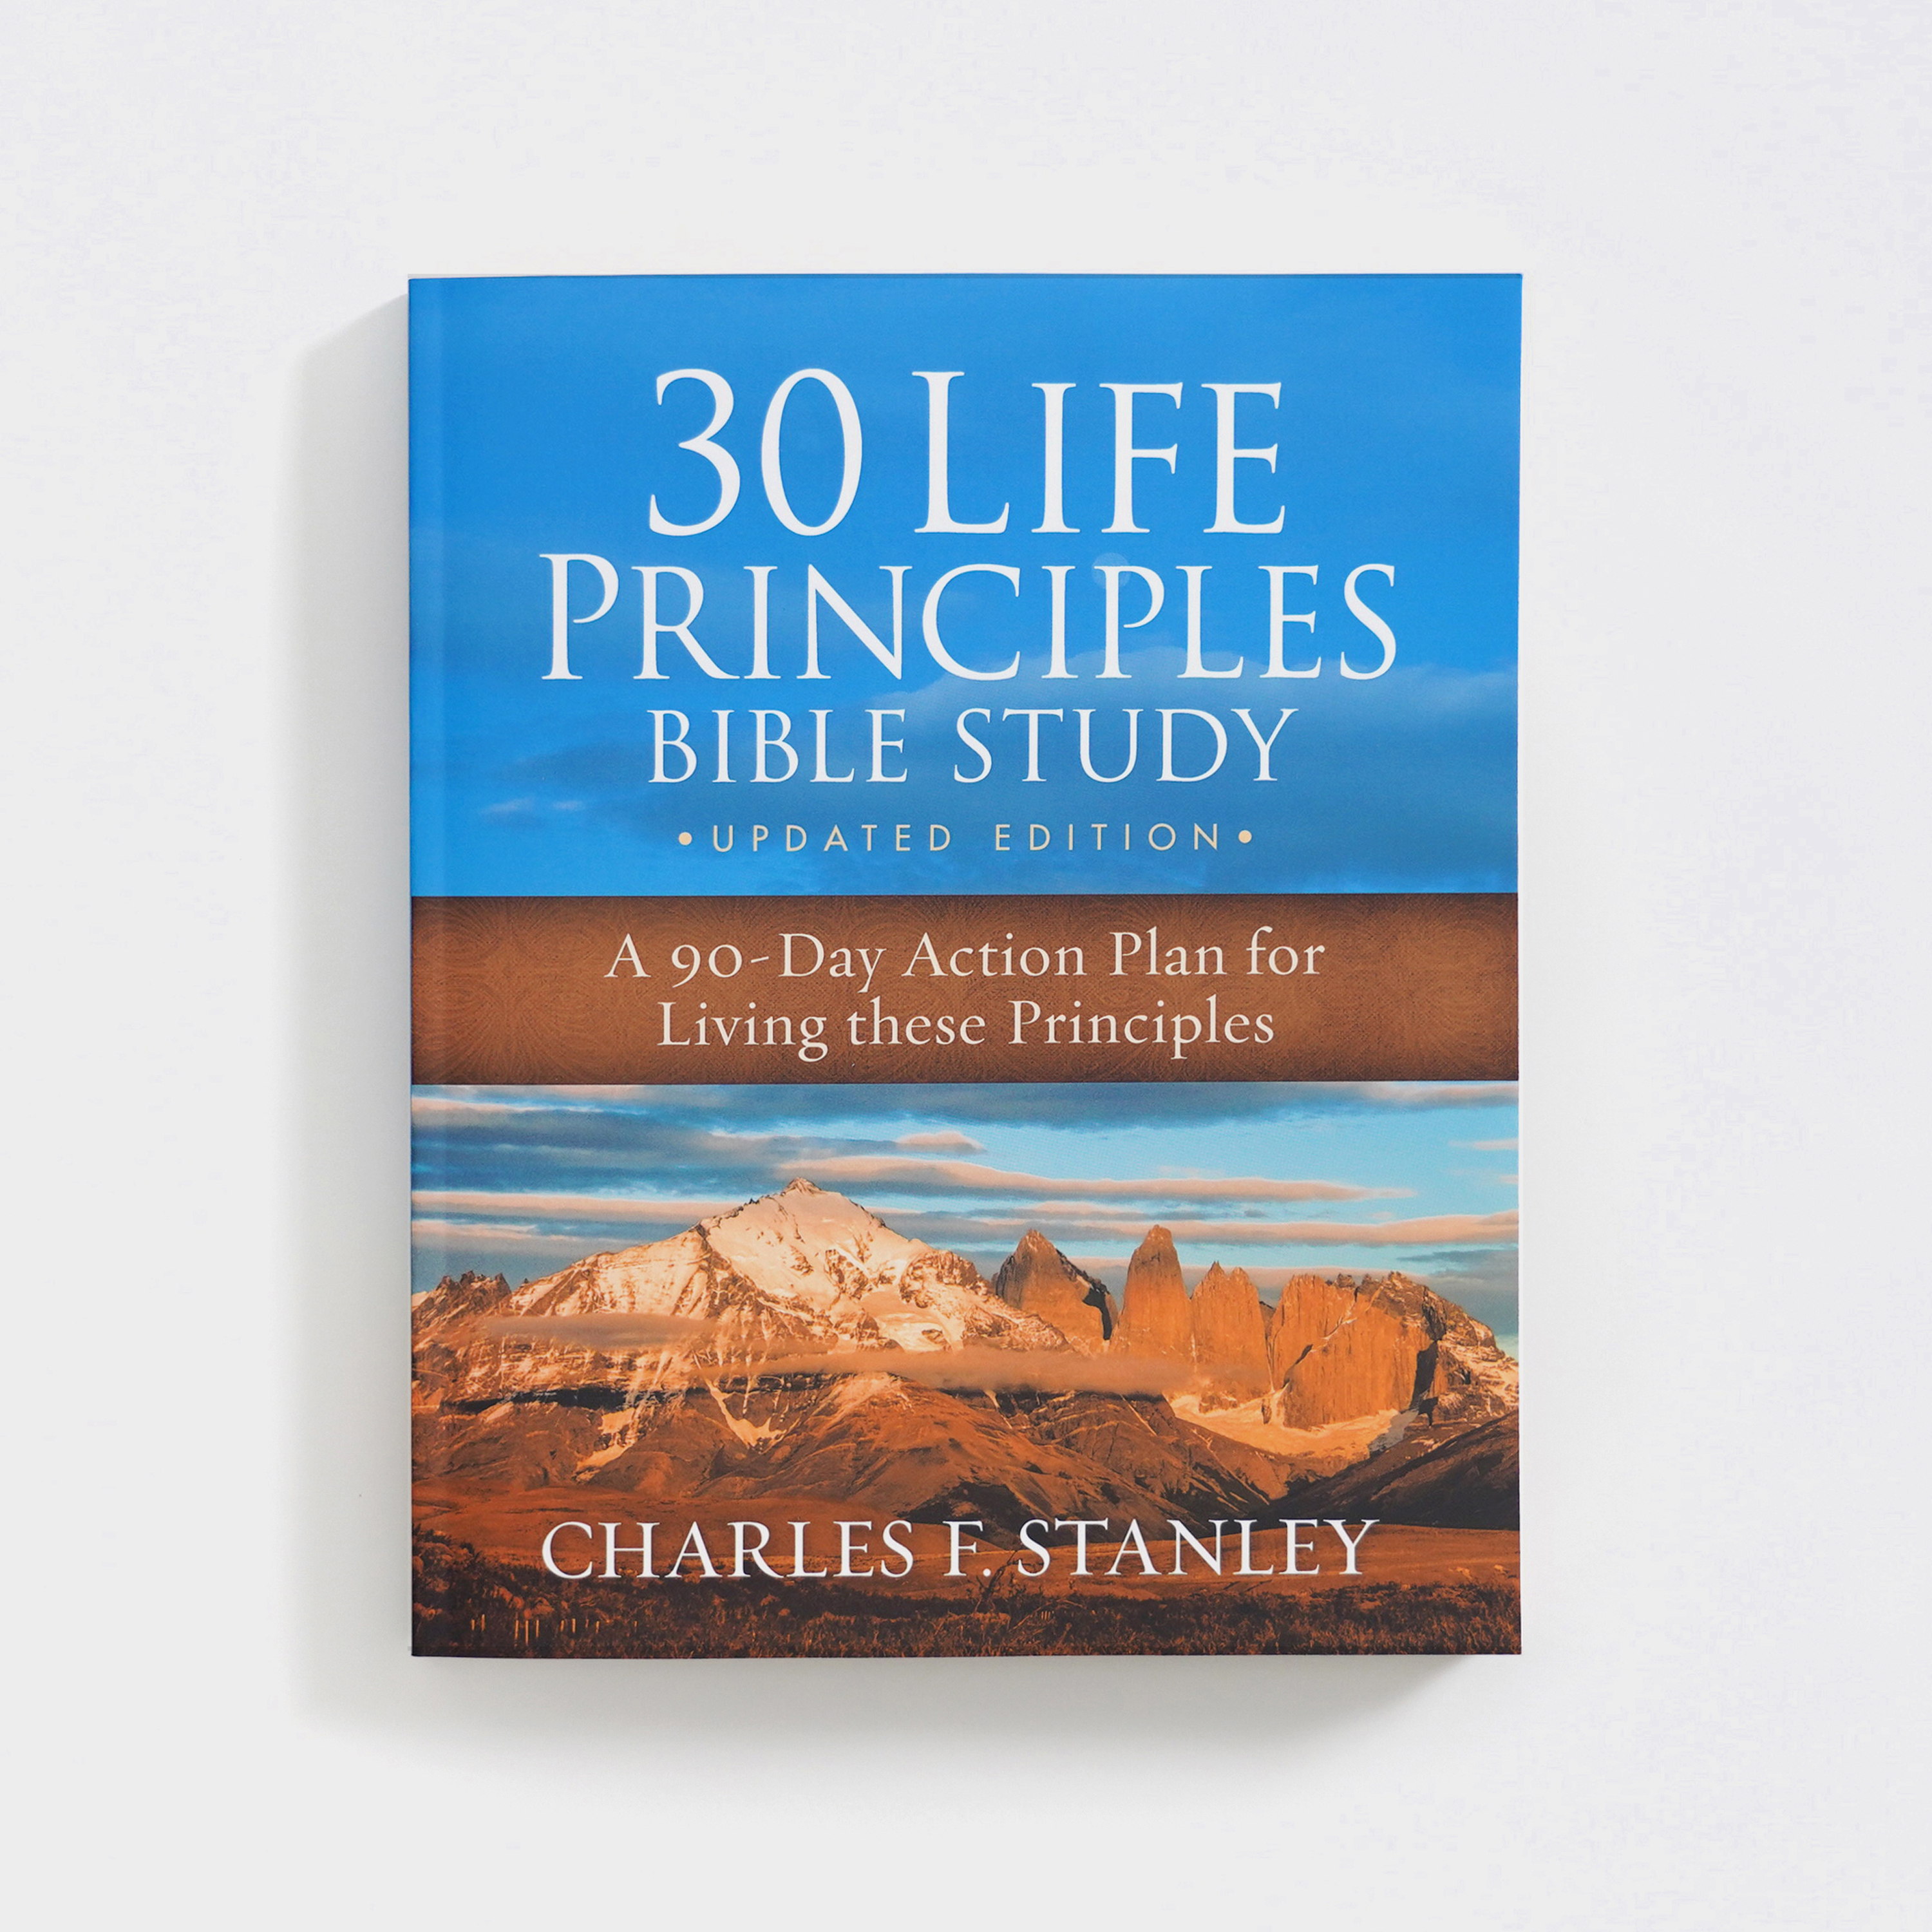 30 Life Principles Bible Study: An Action Plan